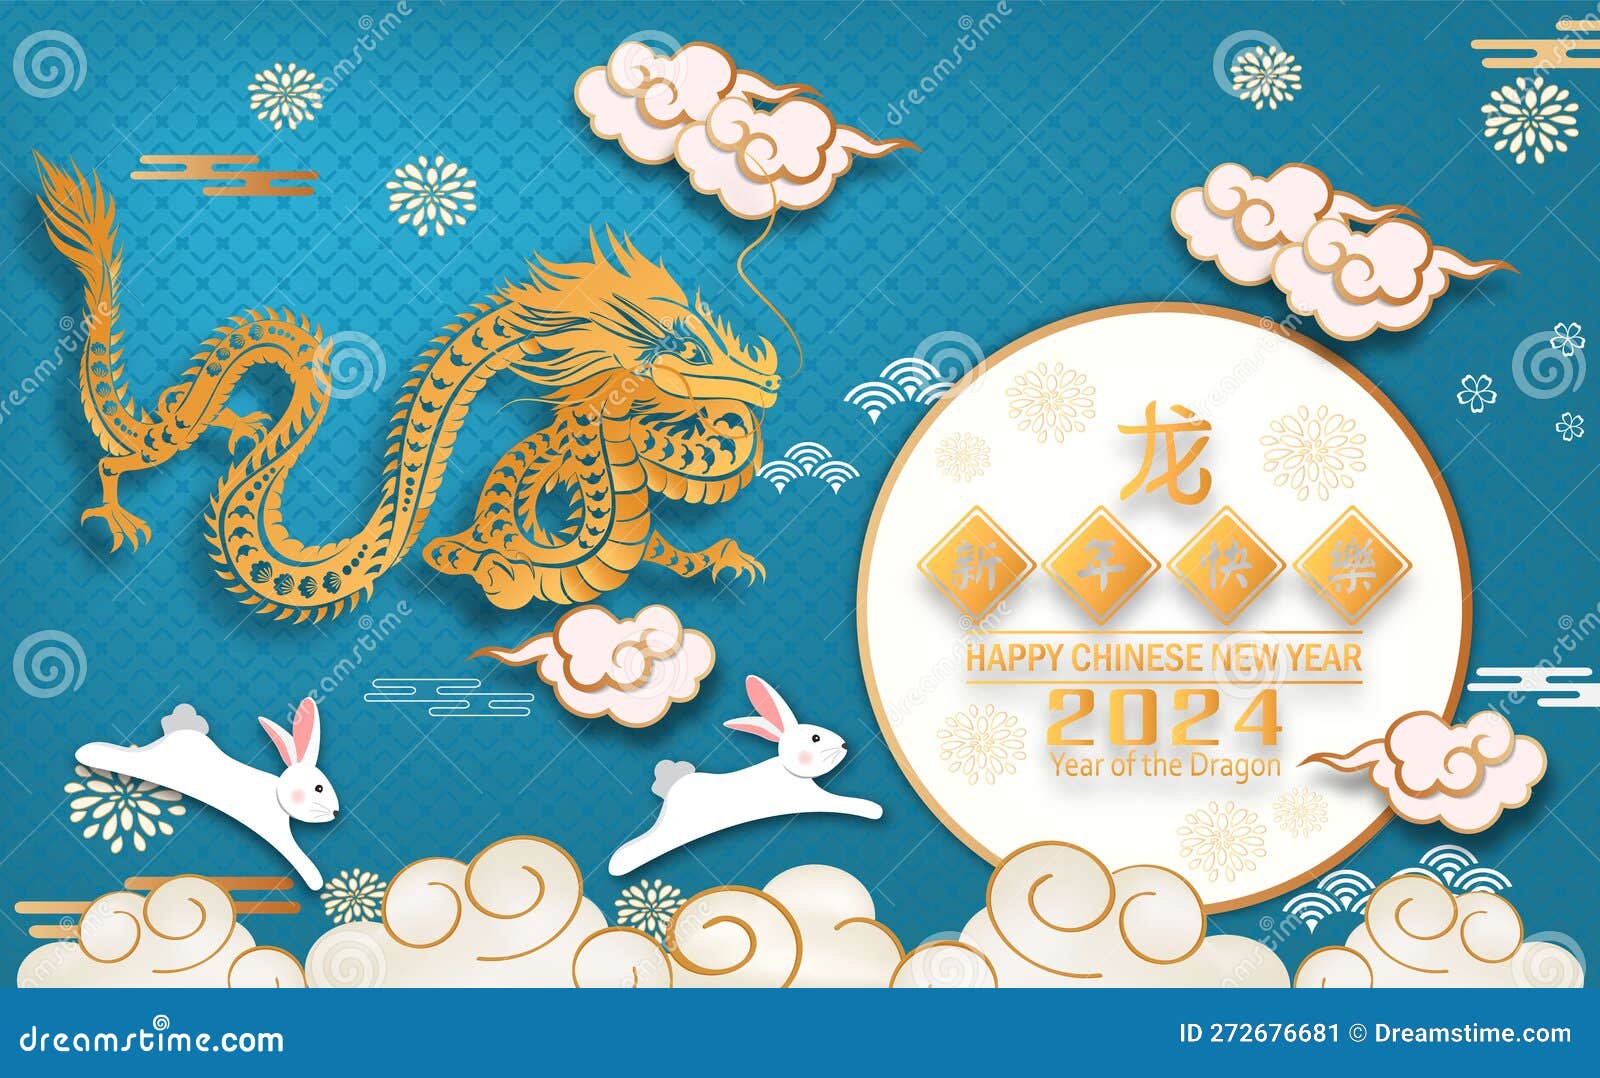 Новогодние открытки с новым годом дракона 2024 мини подарки